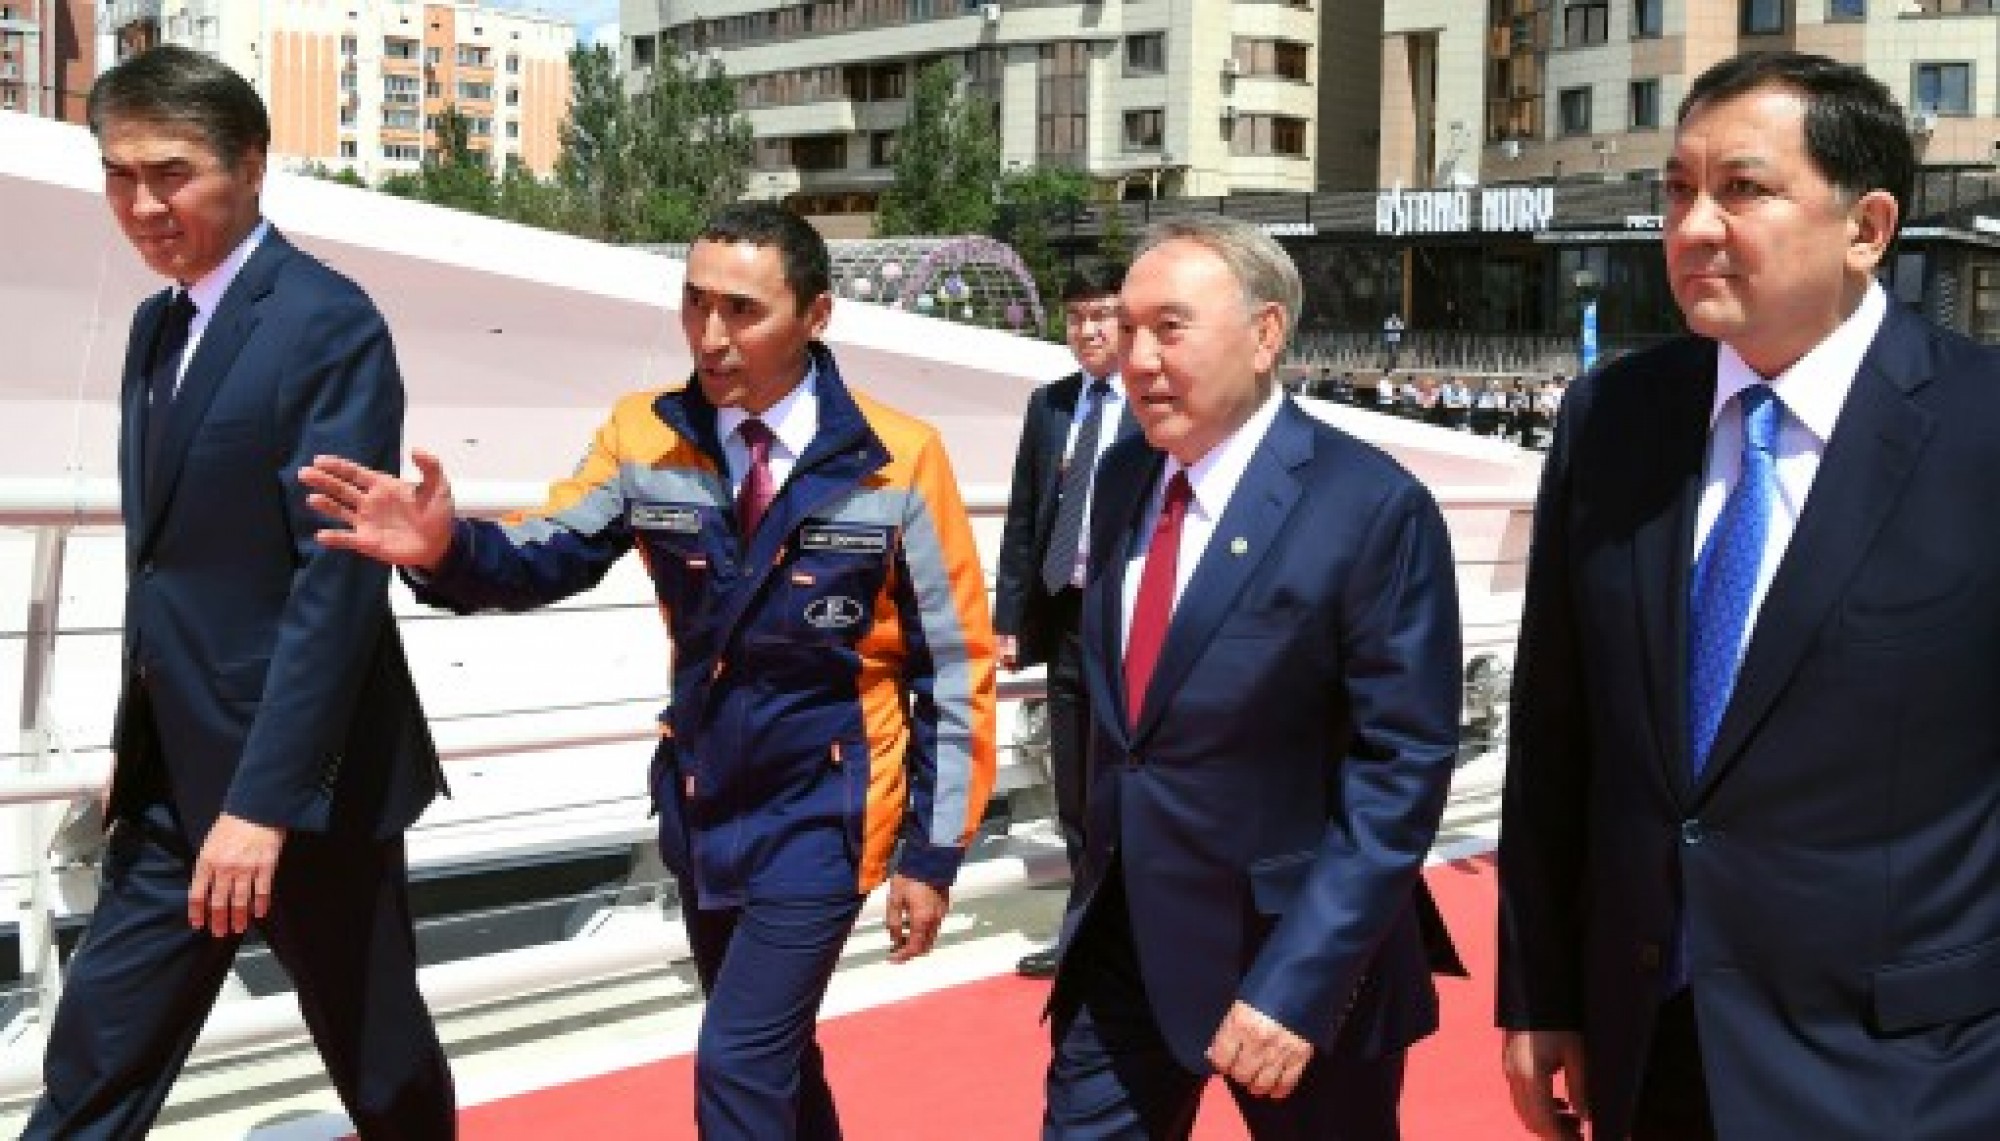 Нурсултан Назарбаев: Столицу строила вся страна, и радоваться должна вся страна